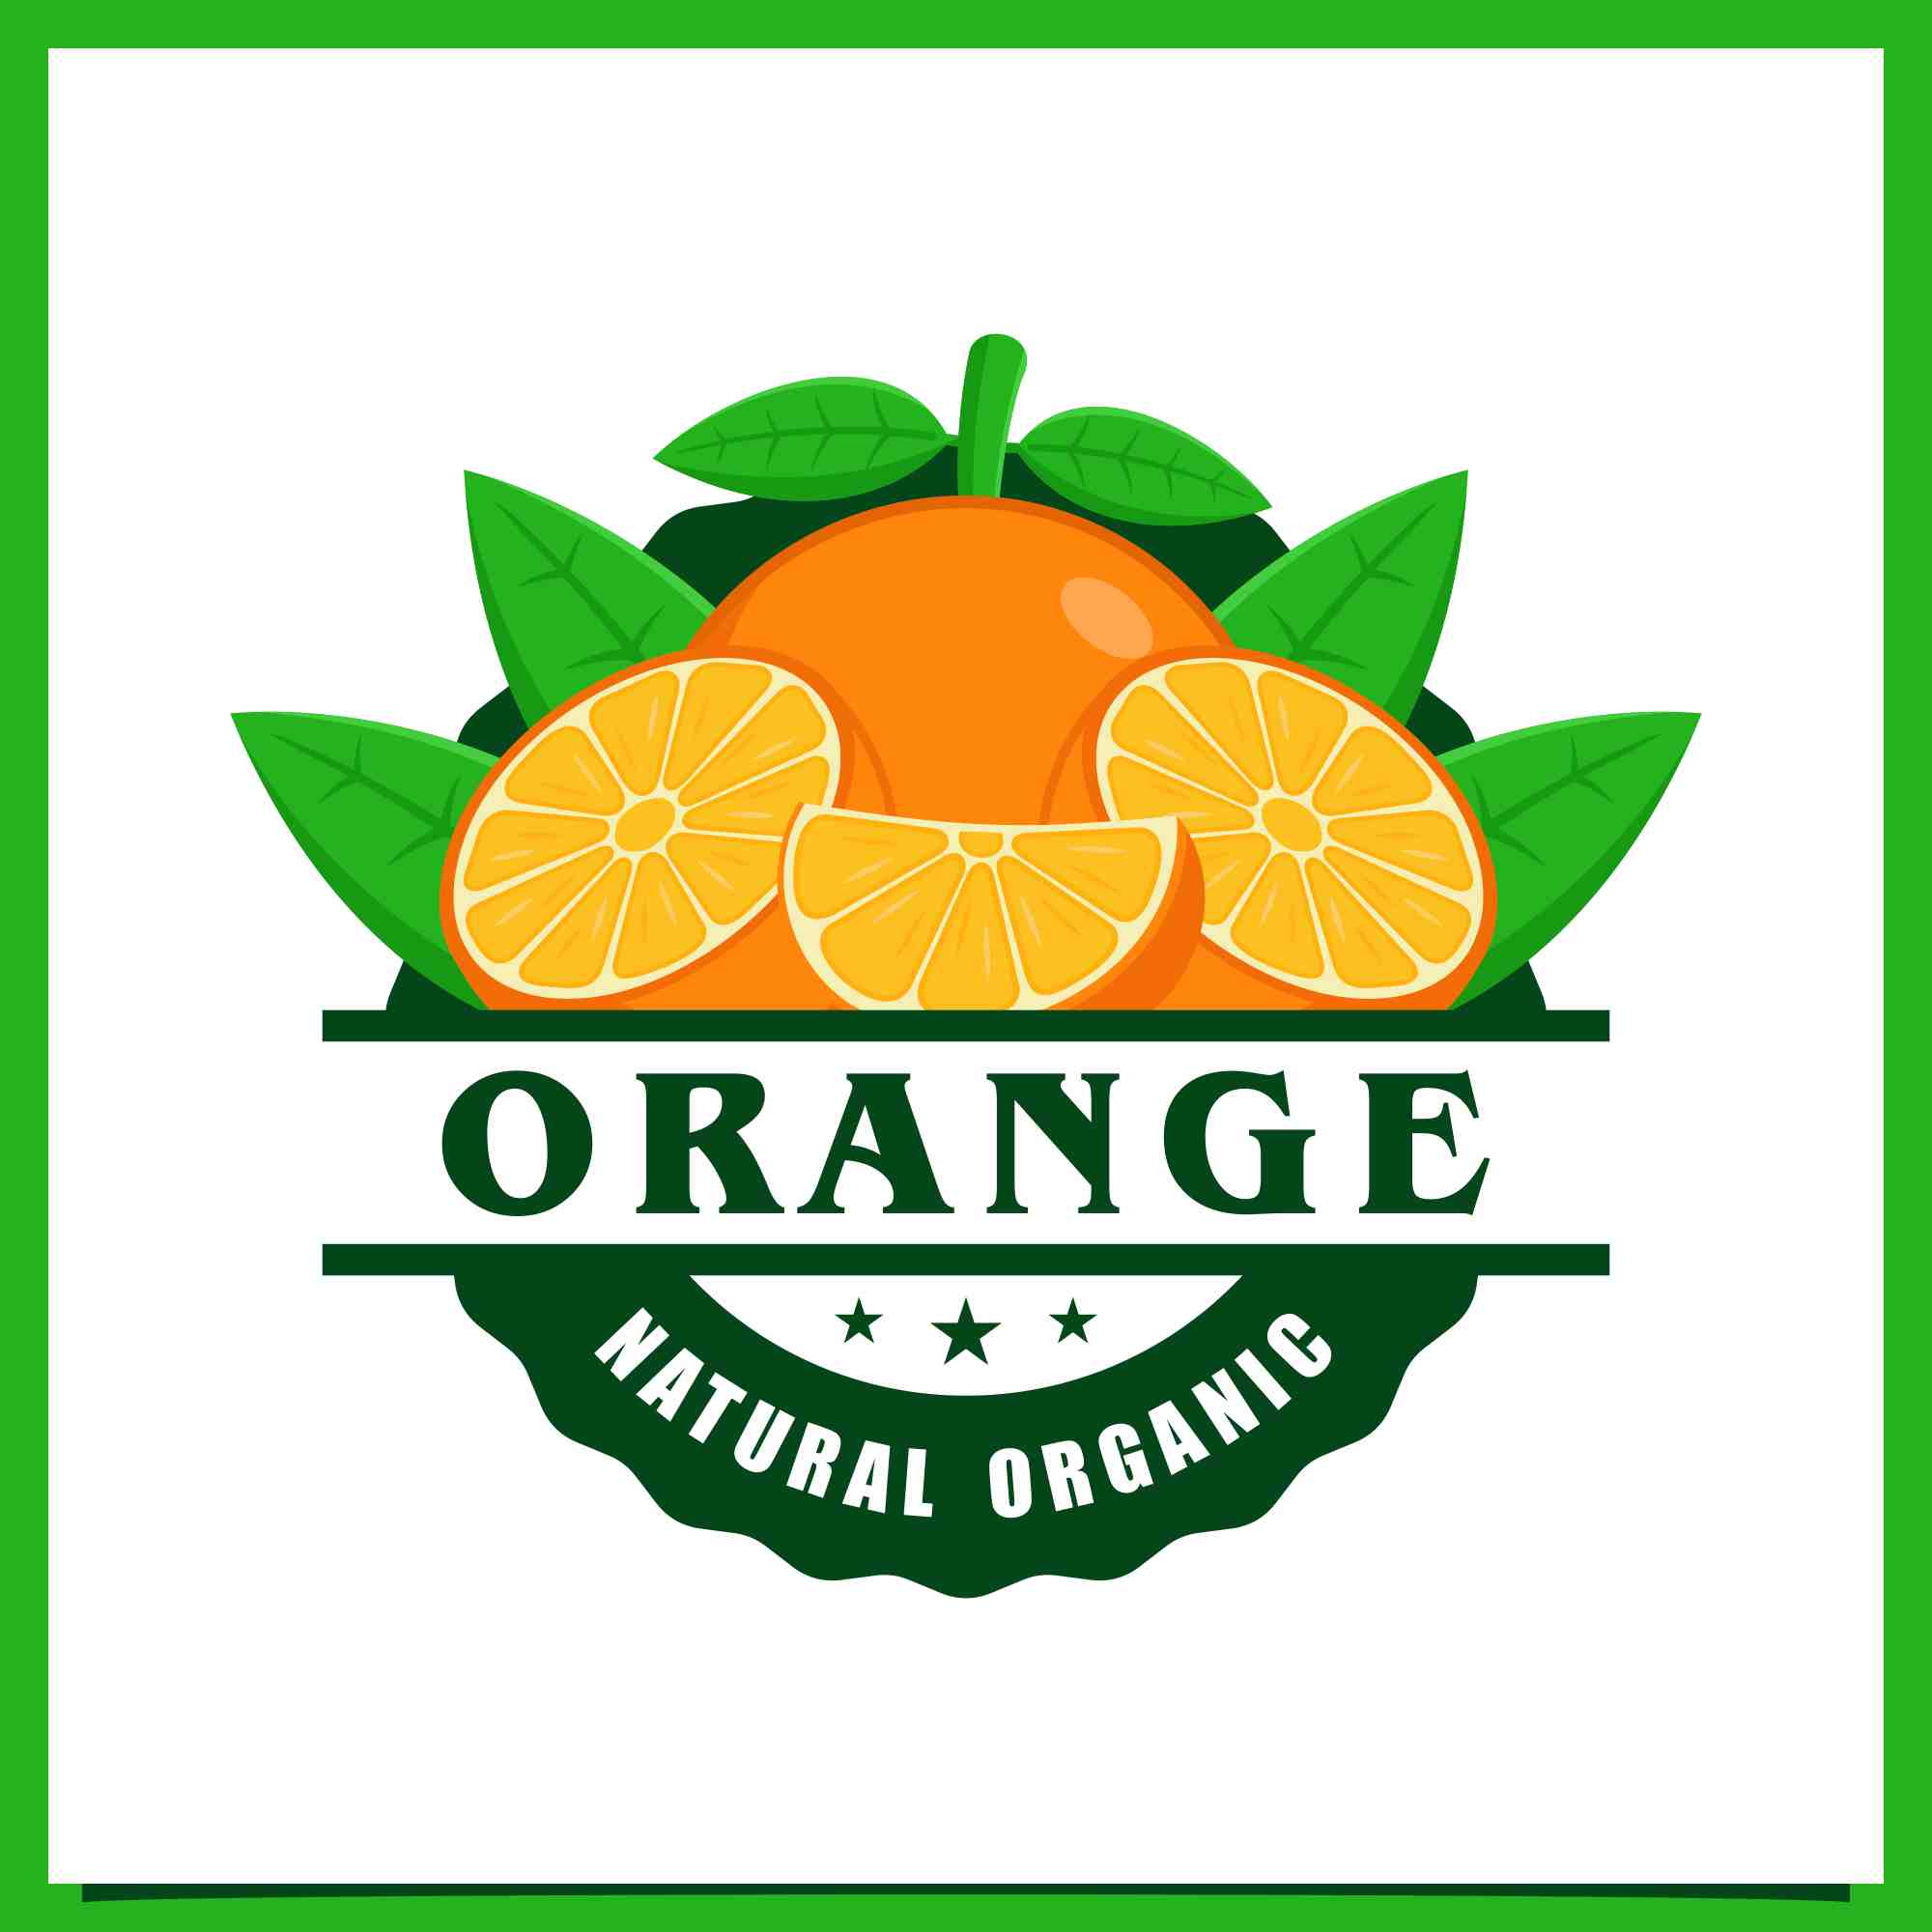 Set Orange fruit fram fresh logo collection - $6 preview image.